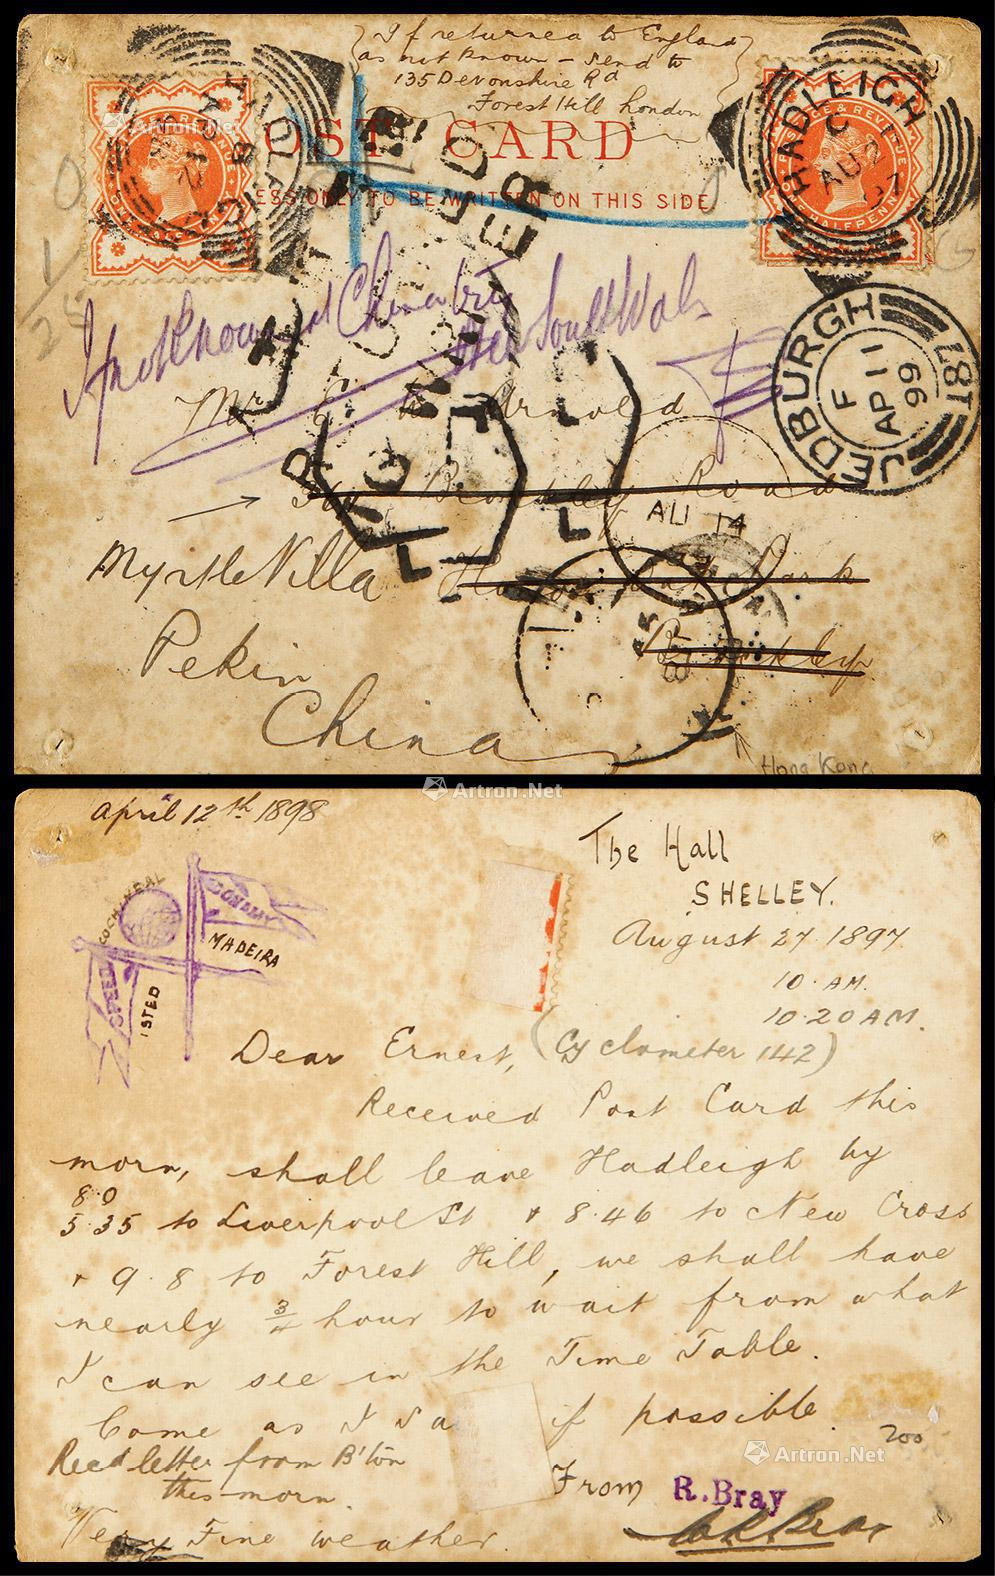 1897年英国哈德利市寄本埠再寄中国二次使用改退明信片，此明信片第一次使用贴半便士邮票一枚